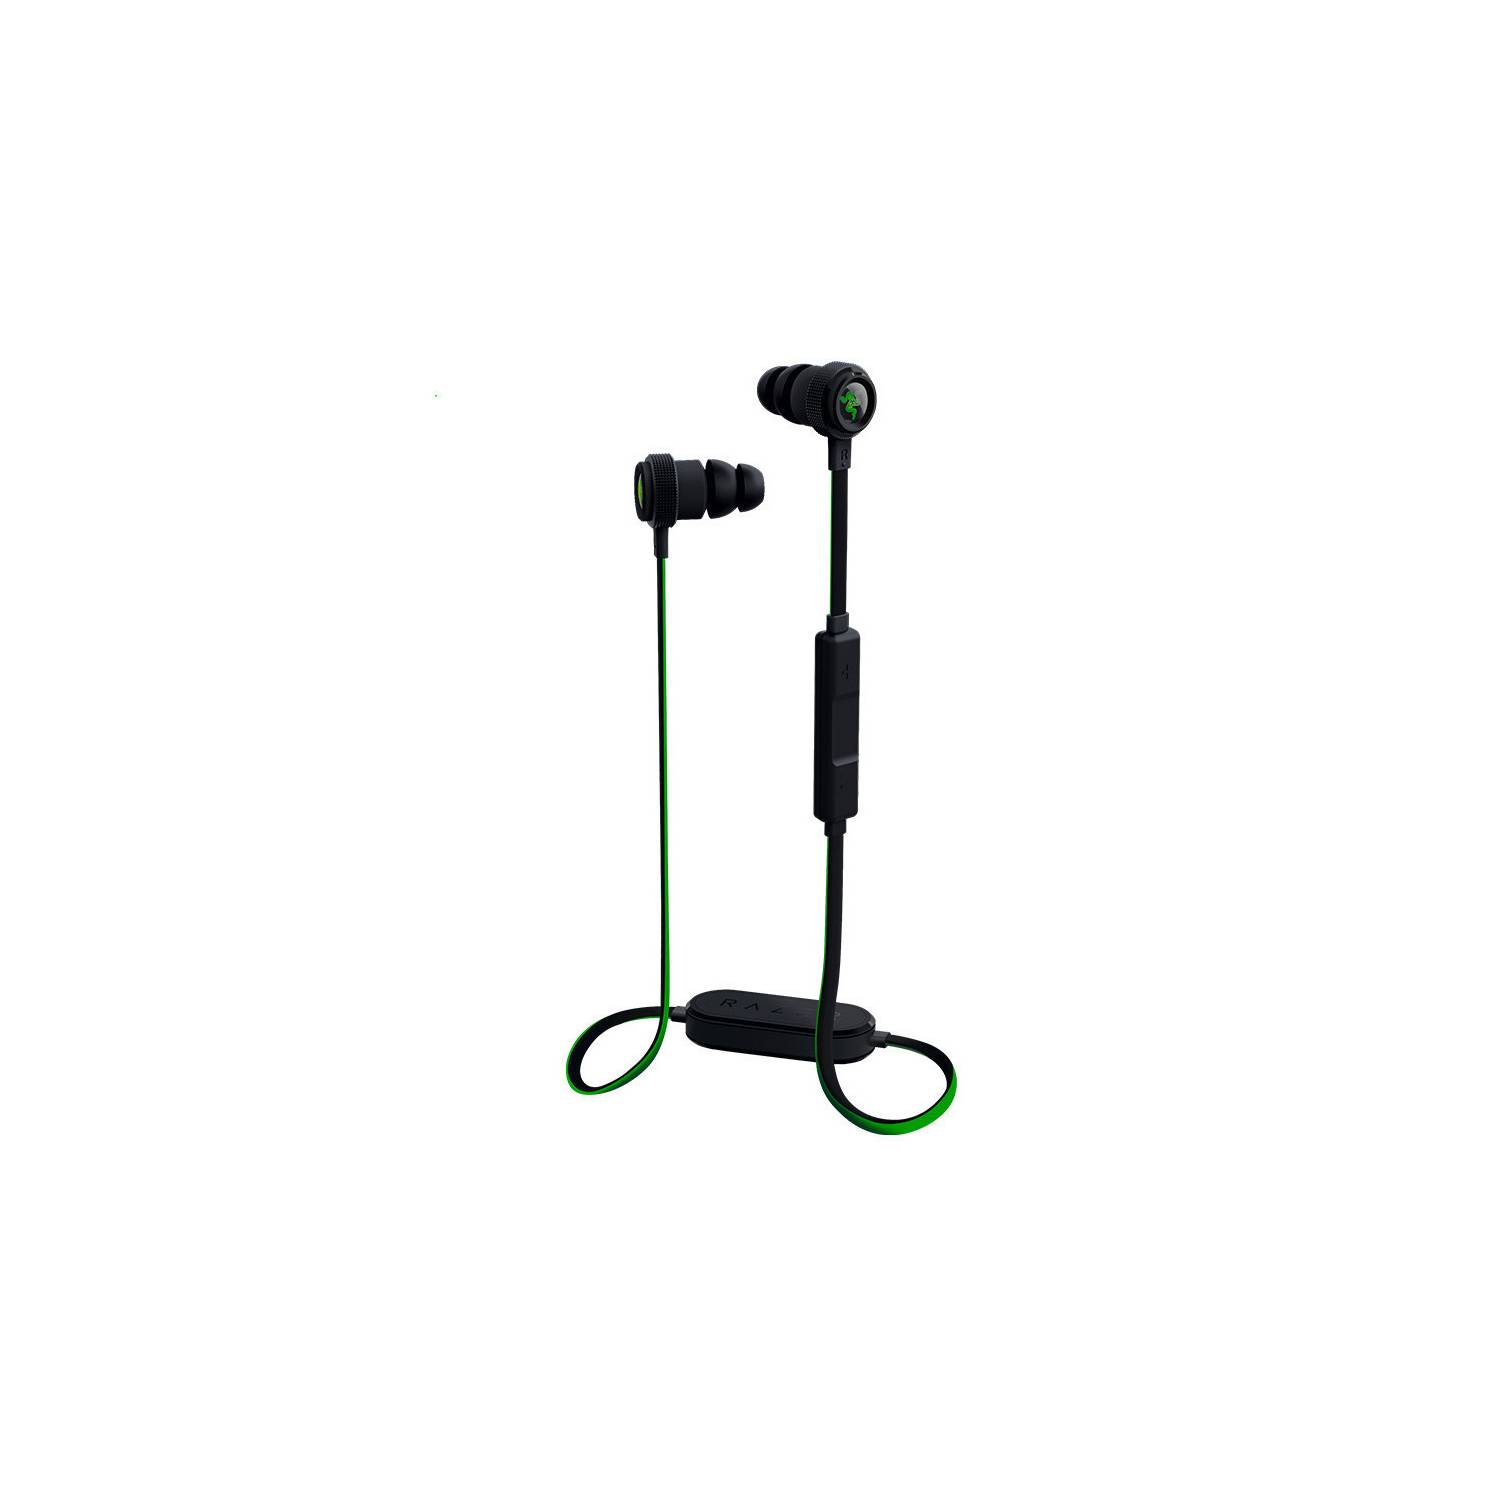  Razer Hammerhead - Auriculares inalámbricos Bluetooth